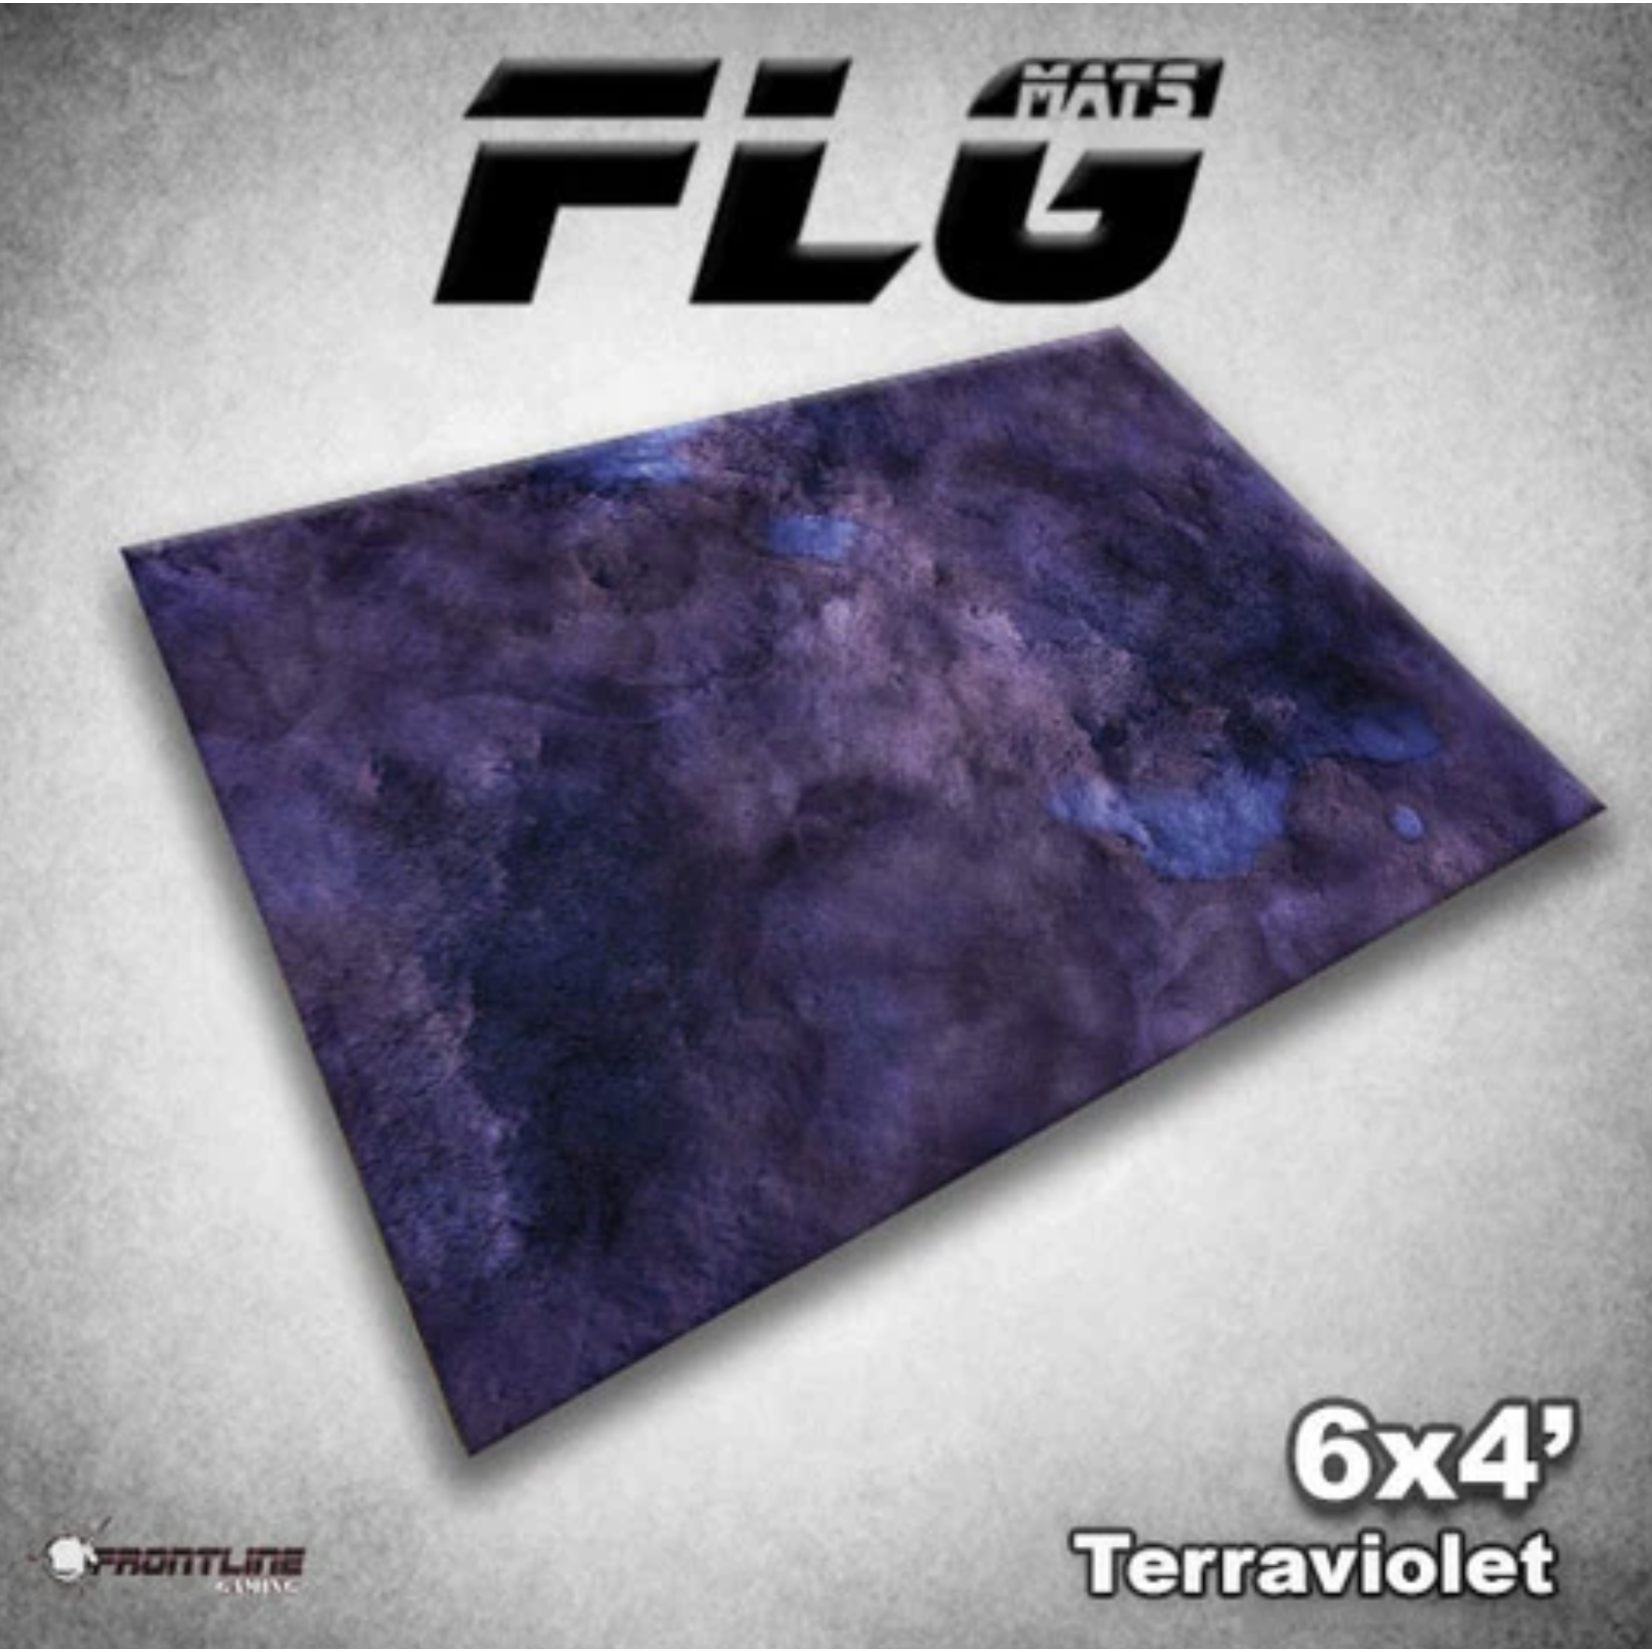 Frontline Gaming FLG Mat - Terraviolet